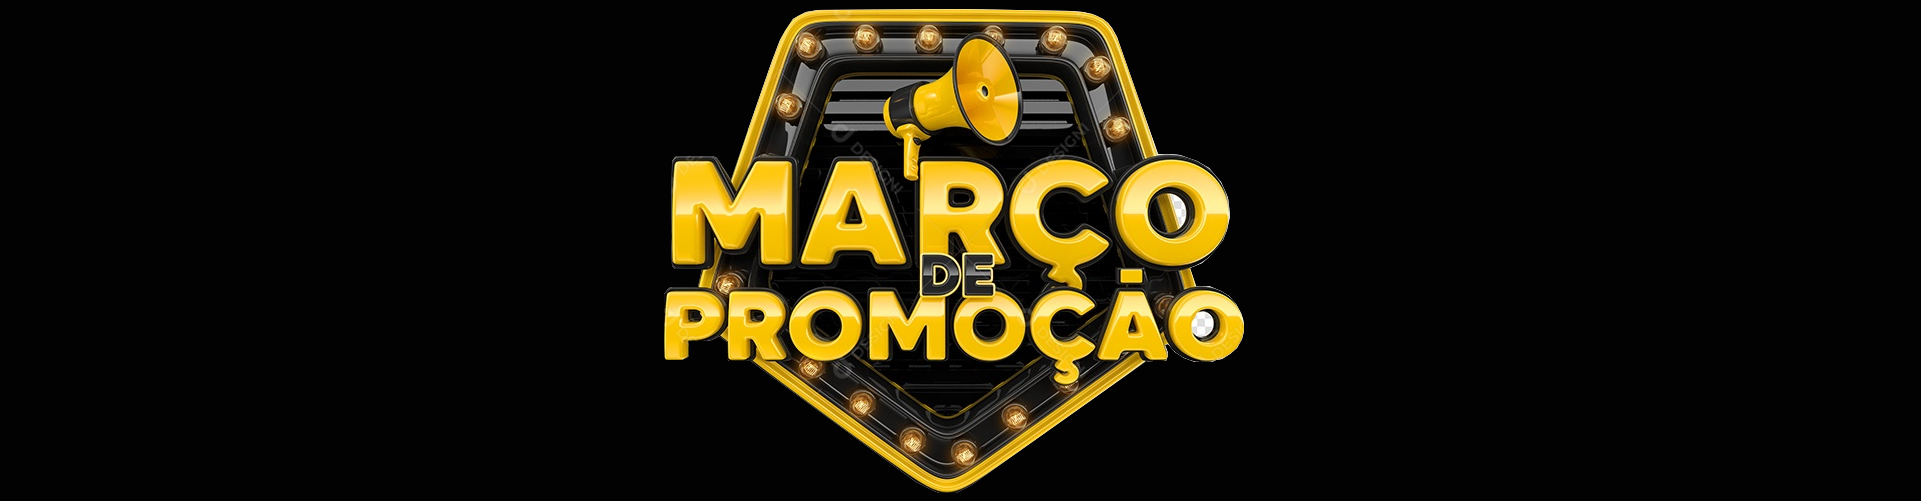 março de promocao banner_black